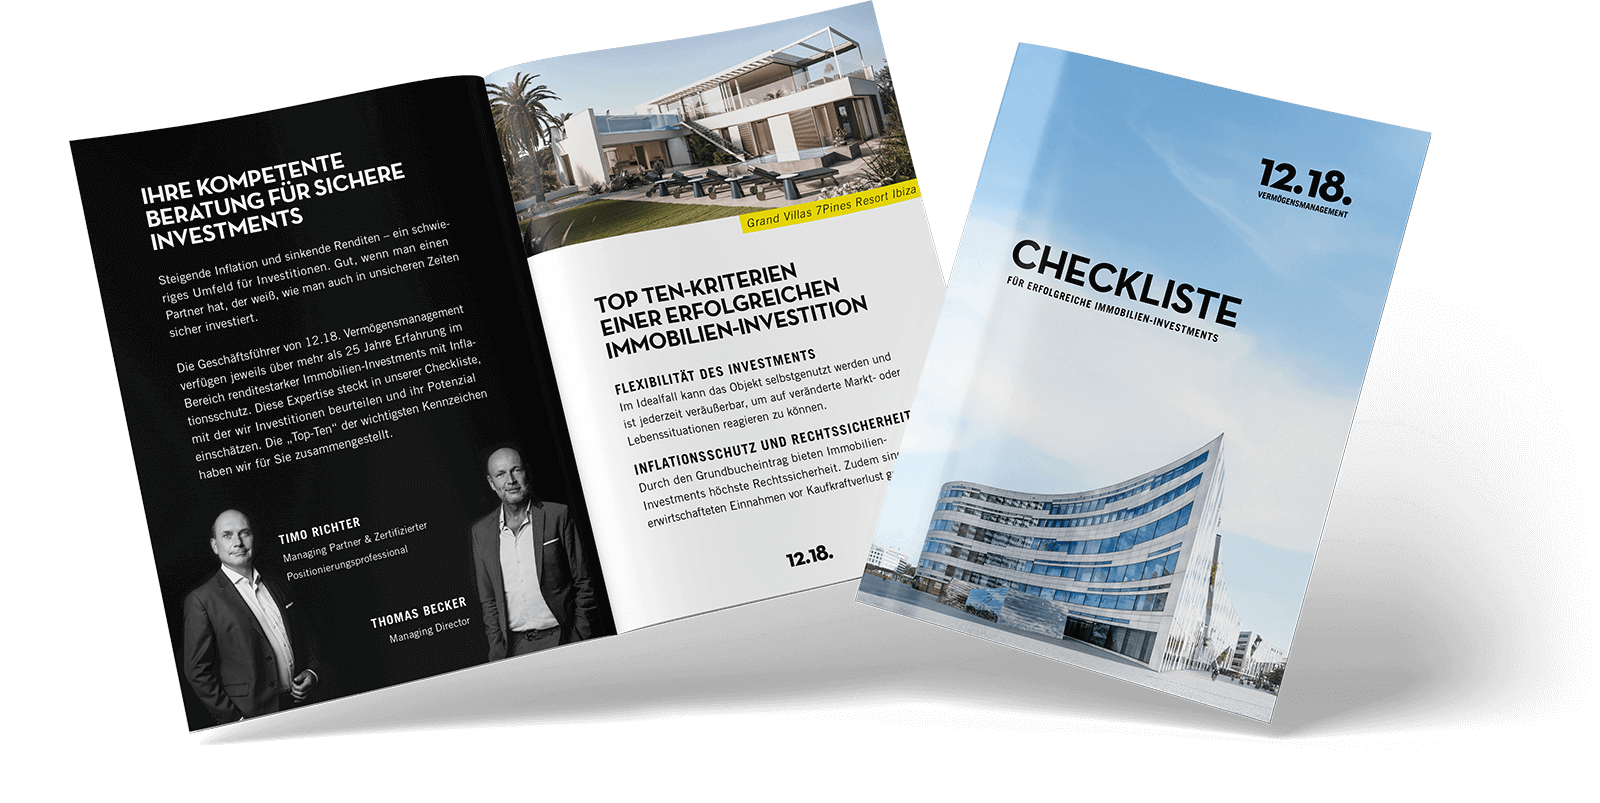 Ein Buch mit Text und Bildern. Top-Ten-Checkliste für eine erfolgreiche Immobilieninvestition. Komp